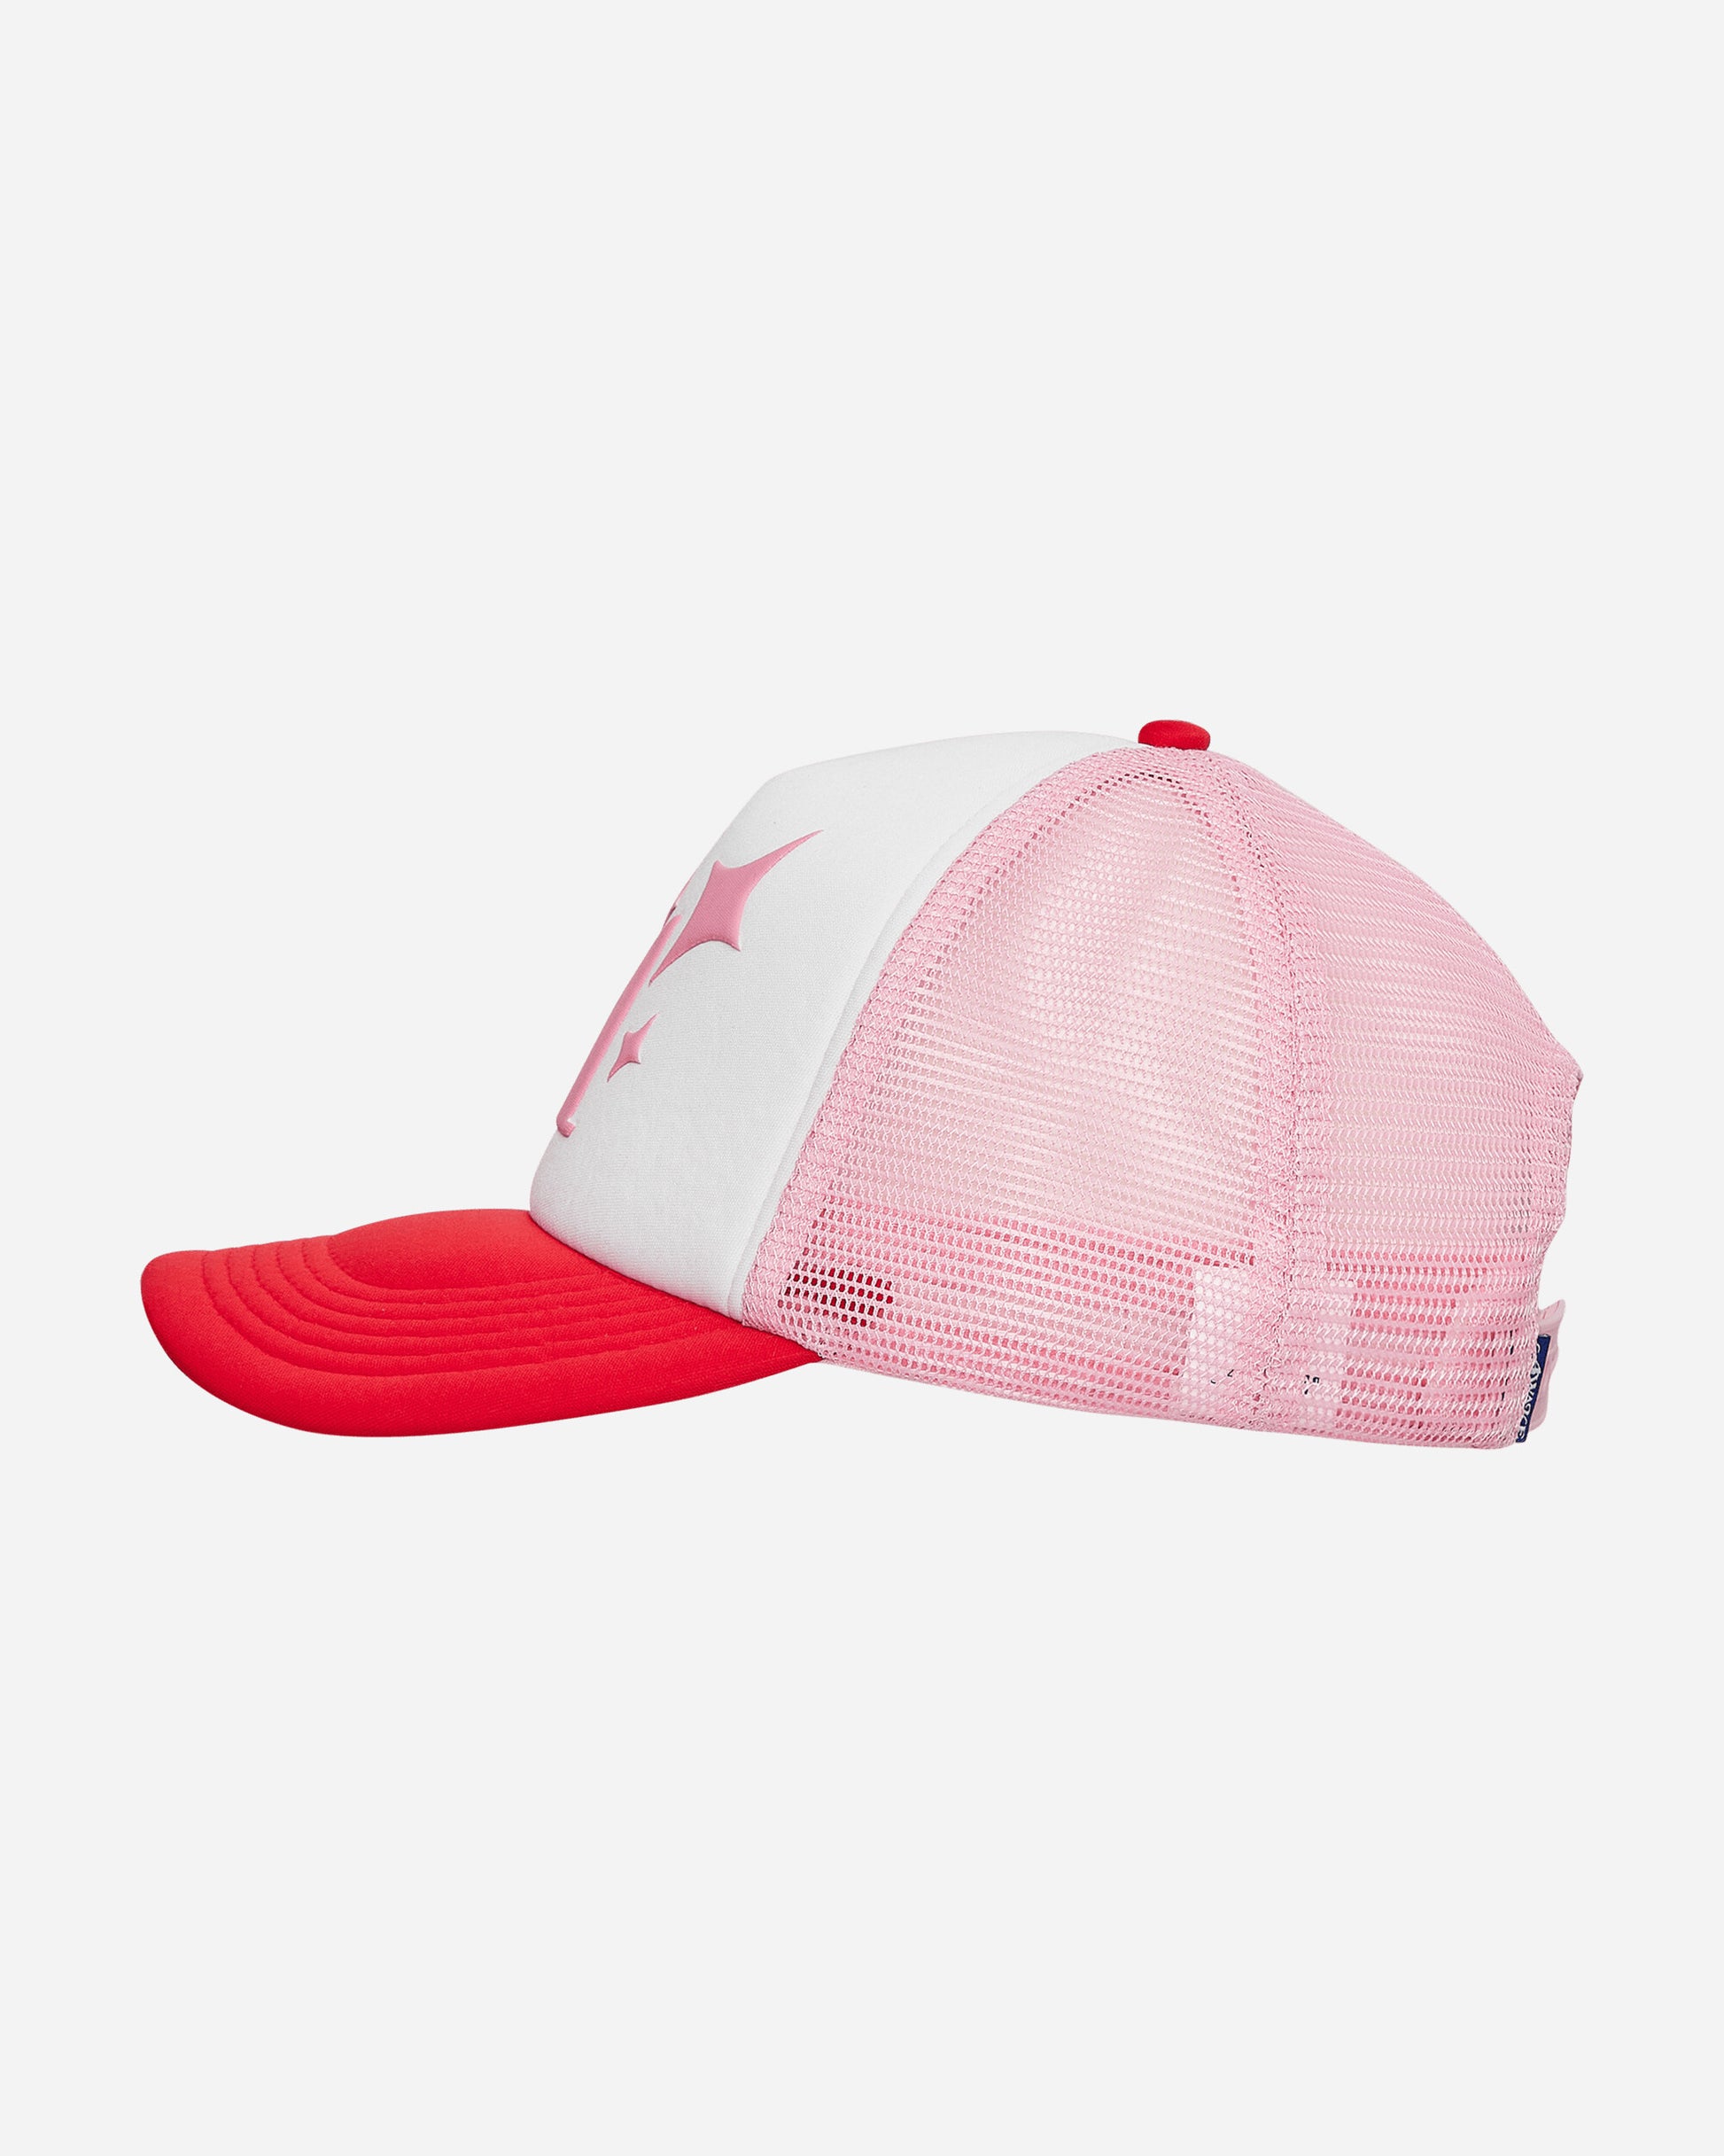 Awake NY A Trucker Hat Pink Hats Caps 9031842 PNK